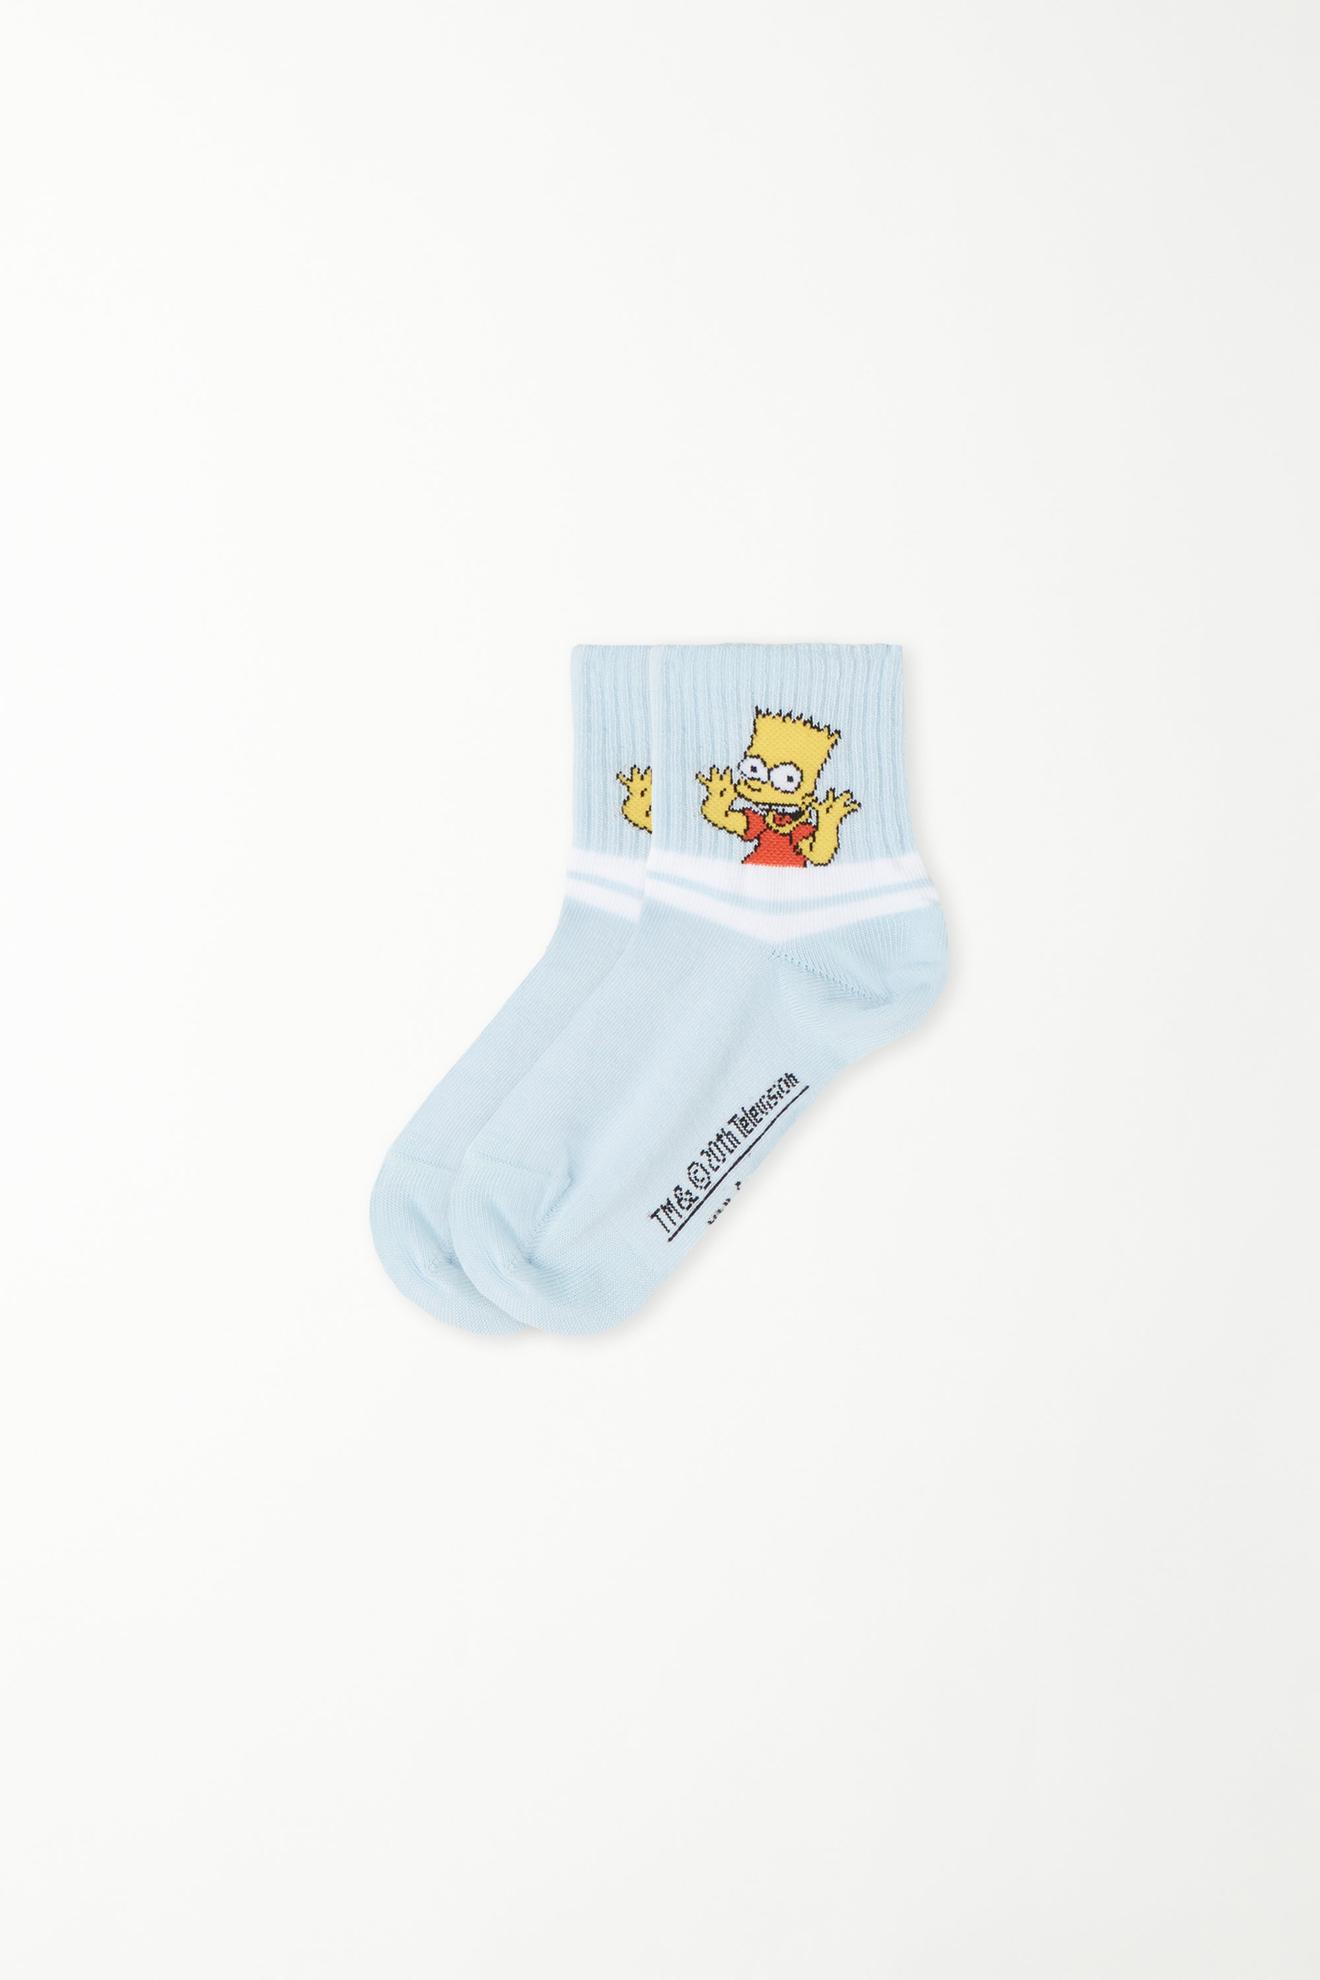 Προσφορά Κοντές Κάλτσες Print The Simpsons για Αγόρι για 3,99€ σε Tezenis